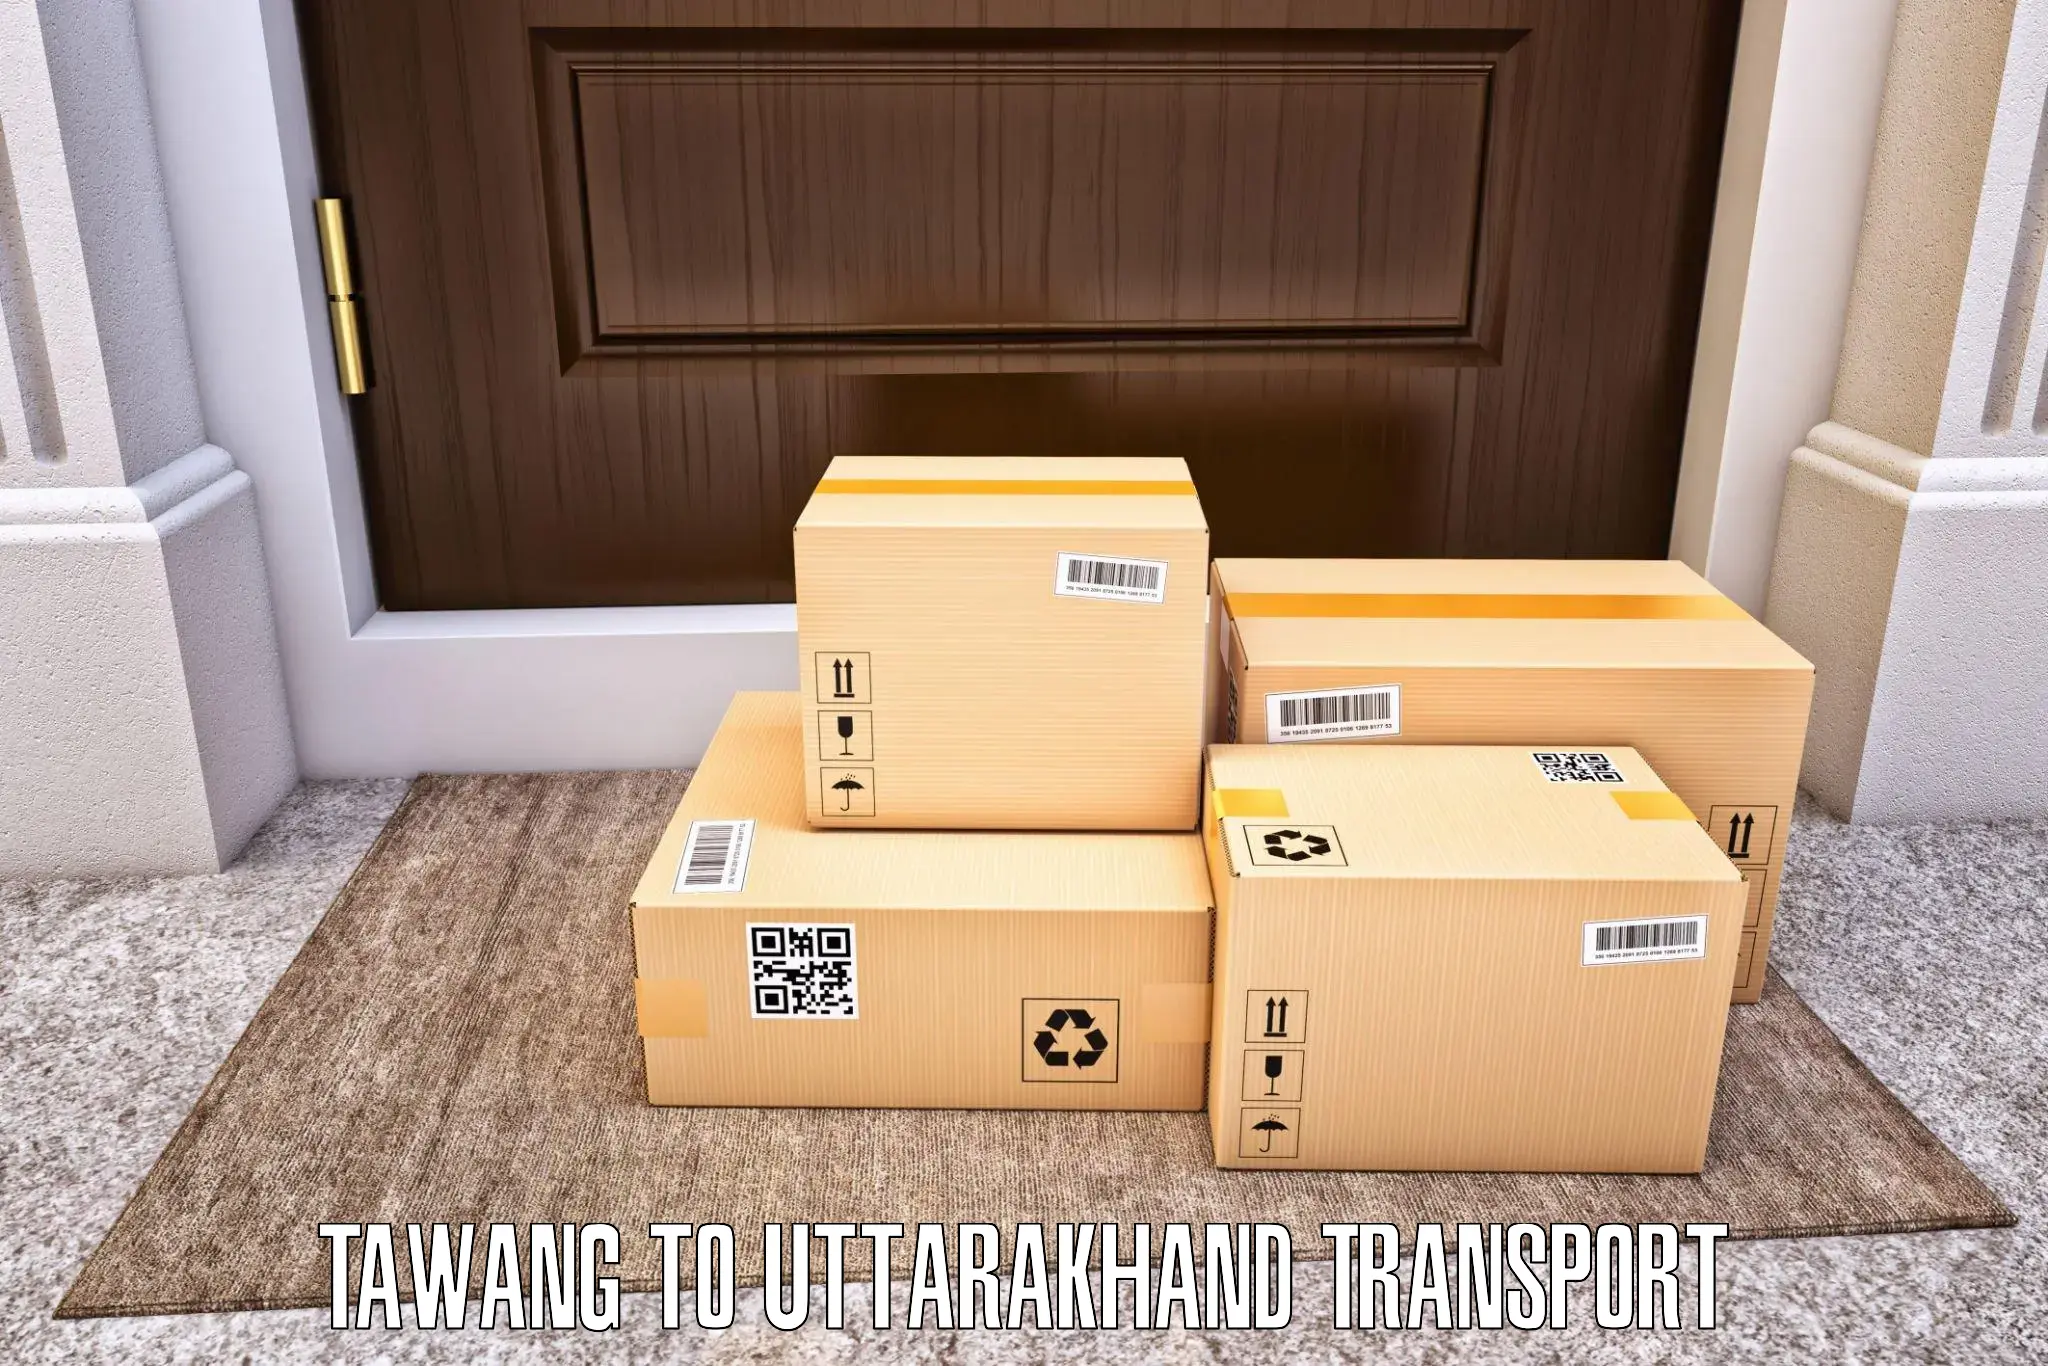 Vehicle transport services Tawang to Sitarganj